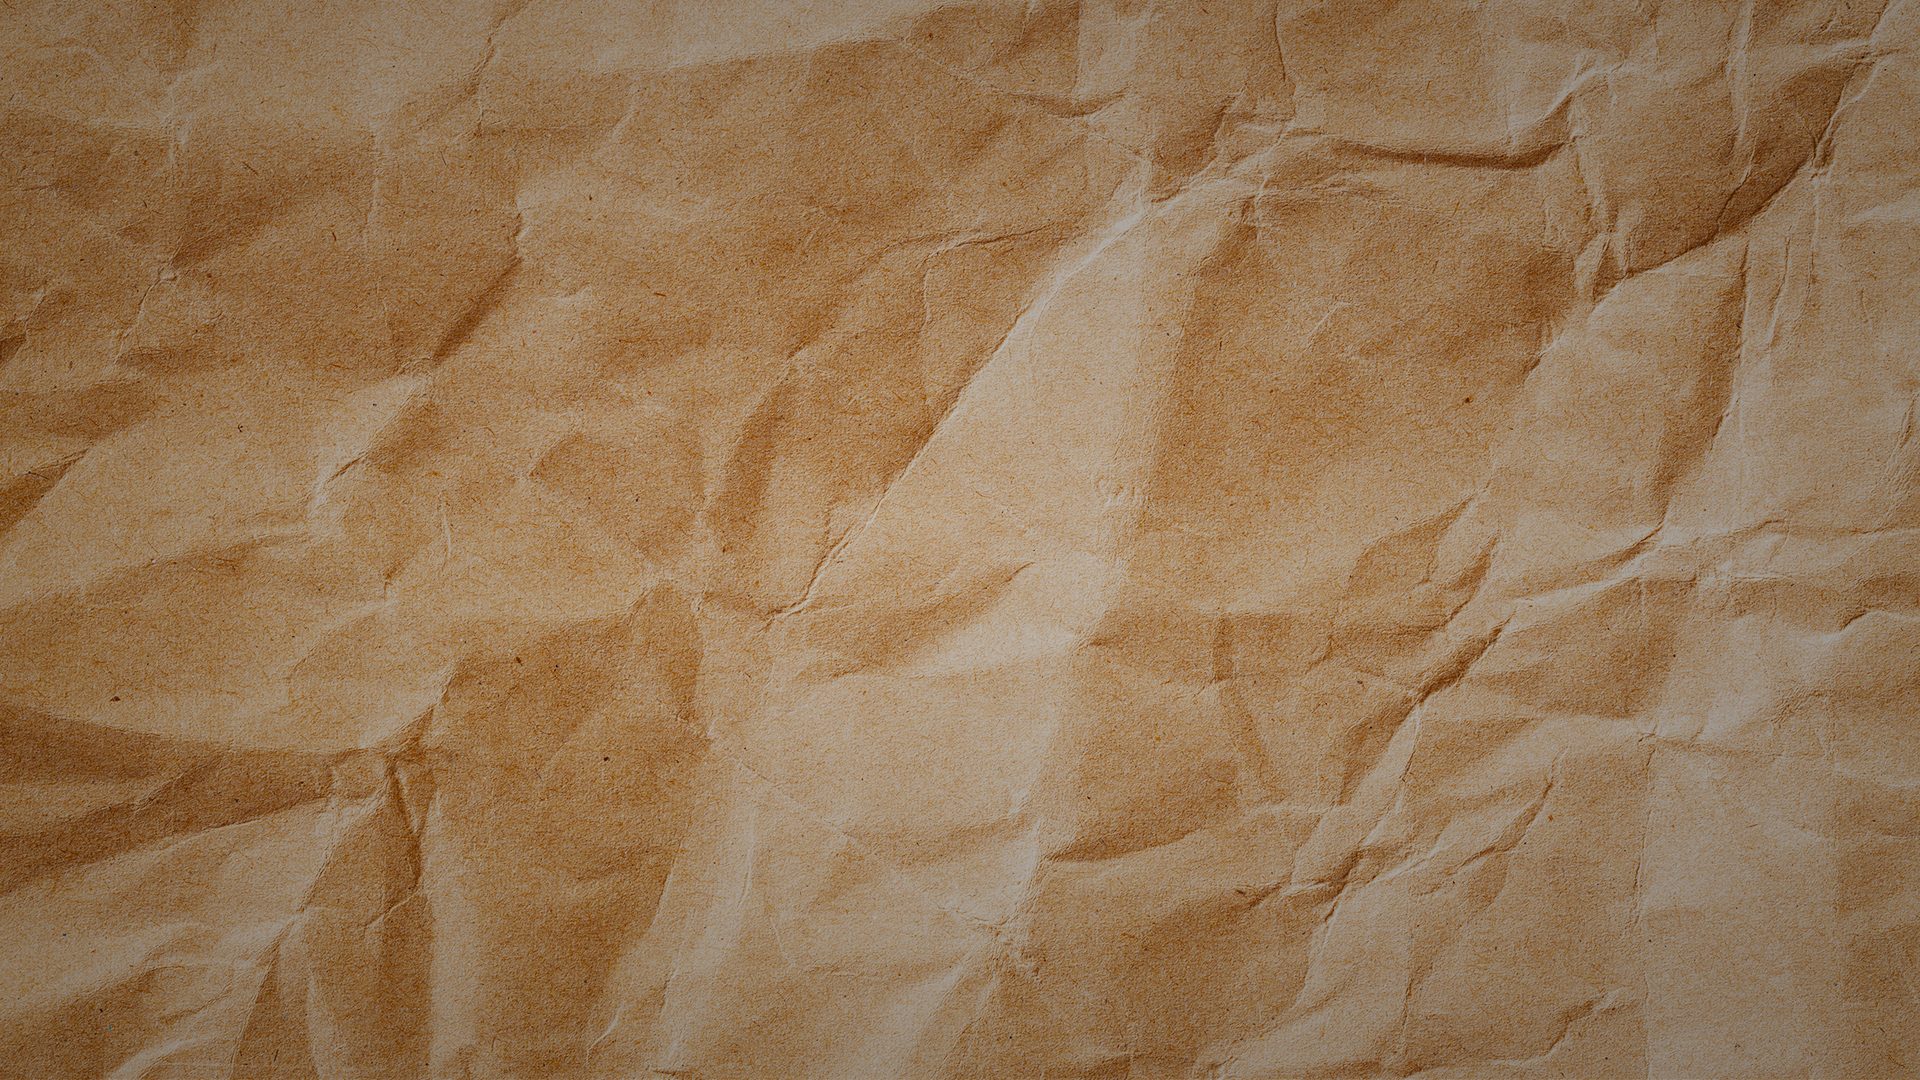 Paper packaging material